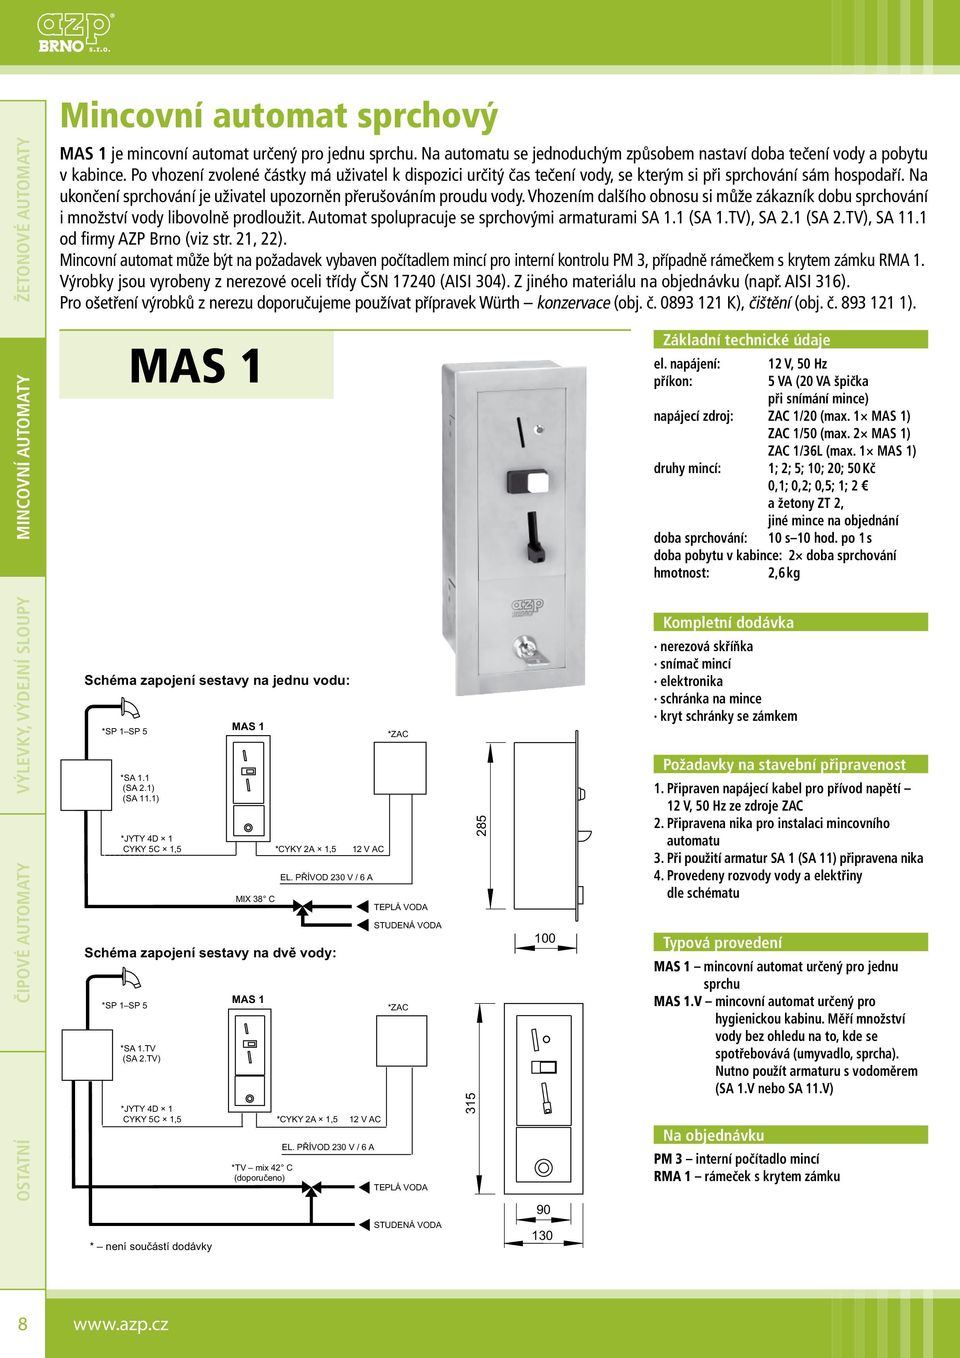 Vhozením dalšího obnosu si může zákazník dobu sprchování i množství vody libovolně prodloužit. Automat spolupracuje se sprchovými armaturami SA 1.1 (SA 1.TV), SA 2.1 (SA 2.TV), SA 11.